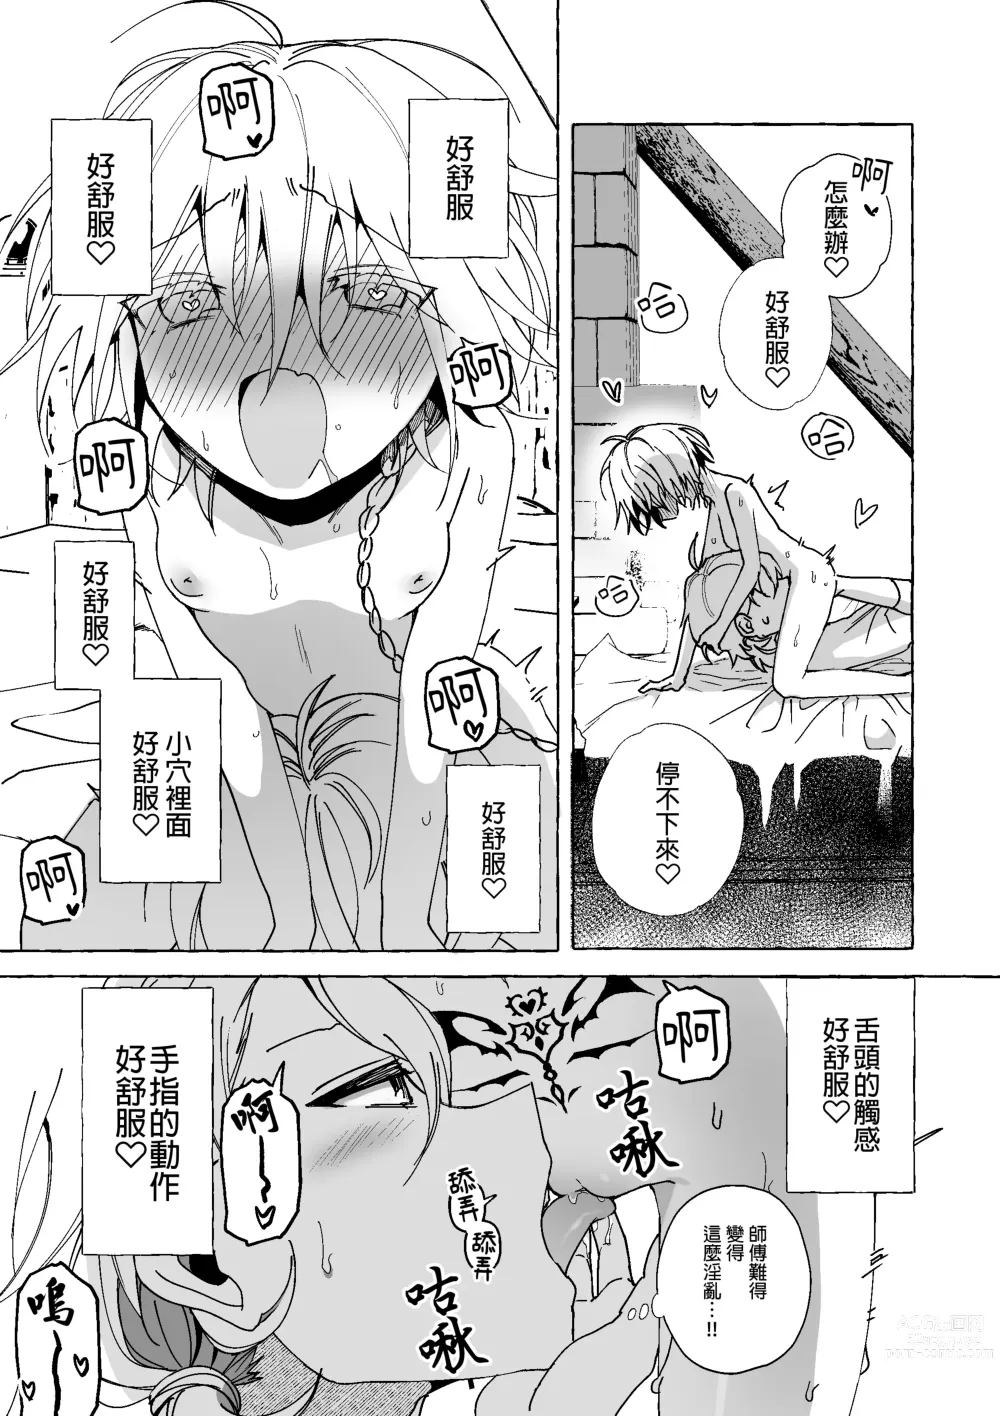 Page 25 of doujinshi 魔女慘敗於自家弟子